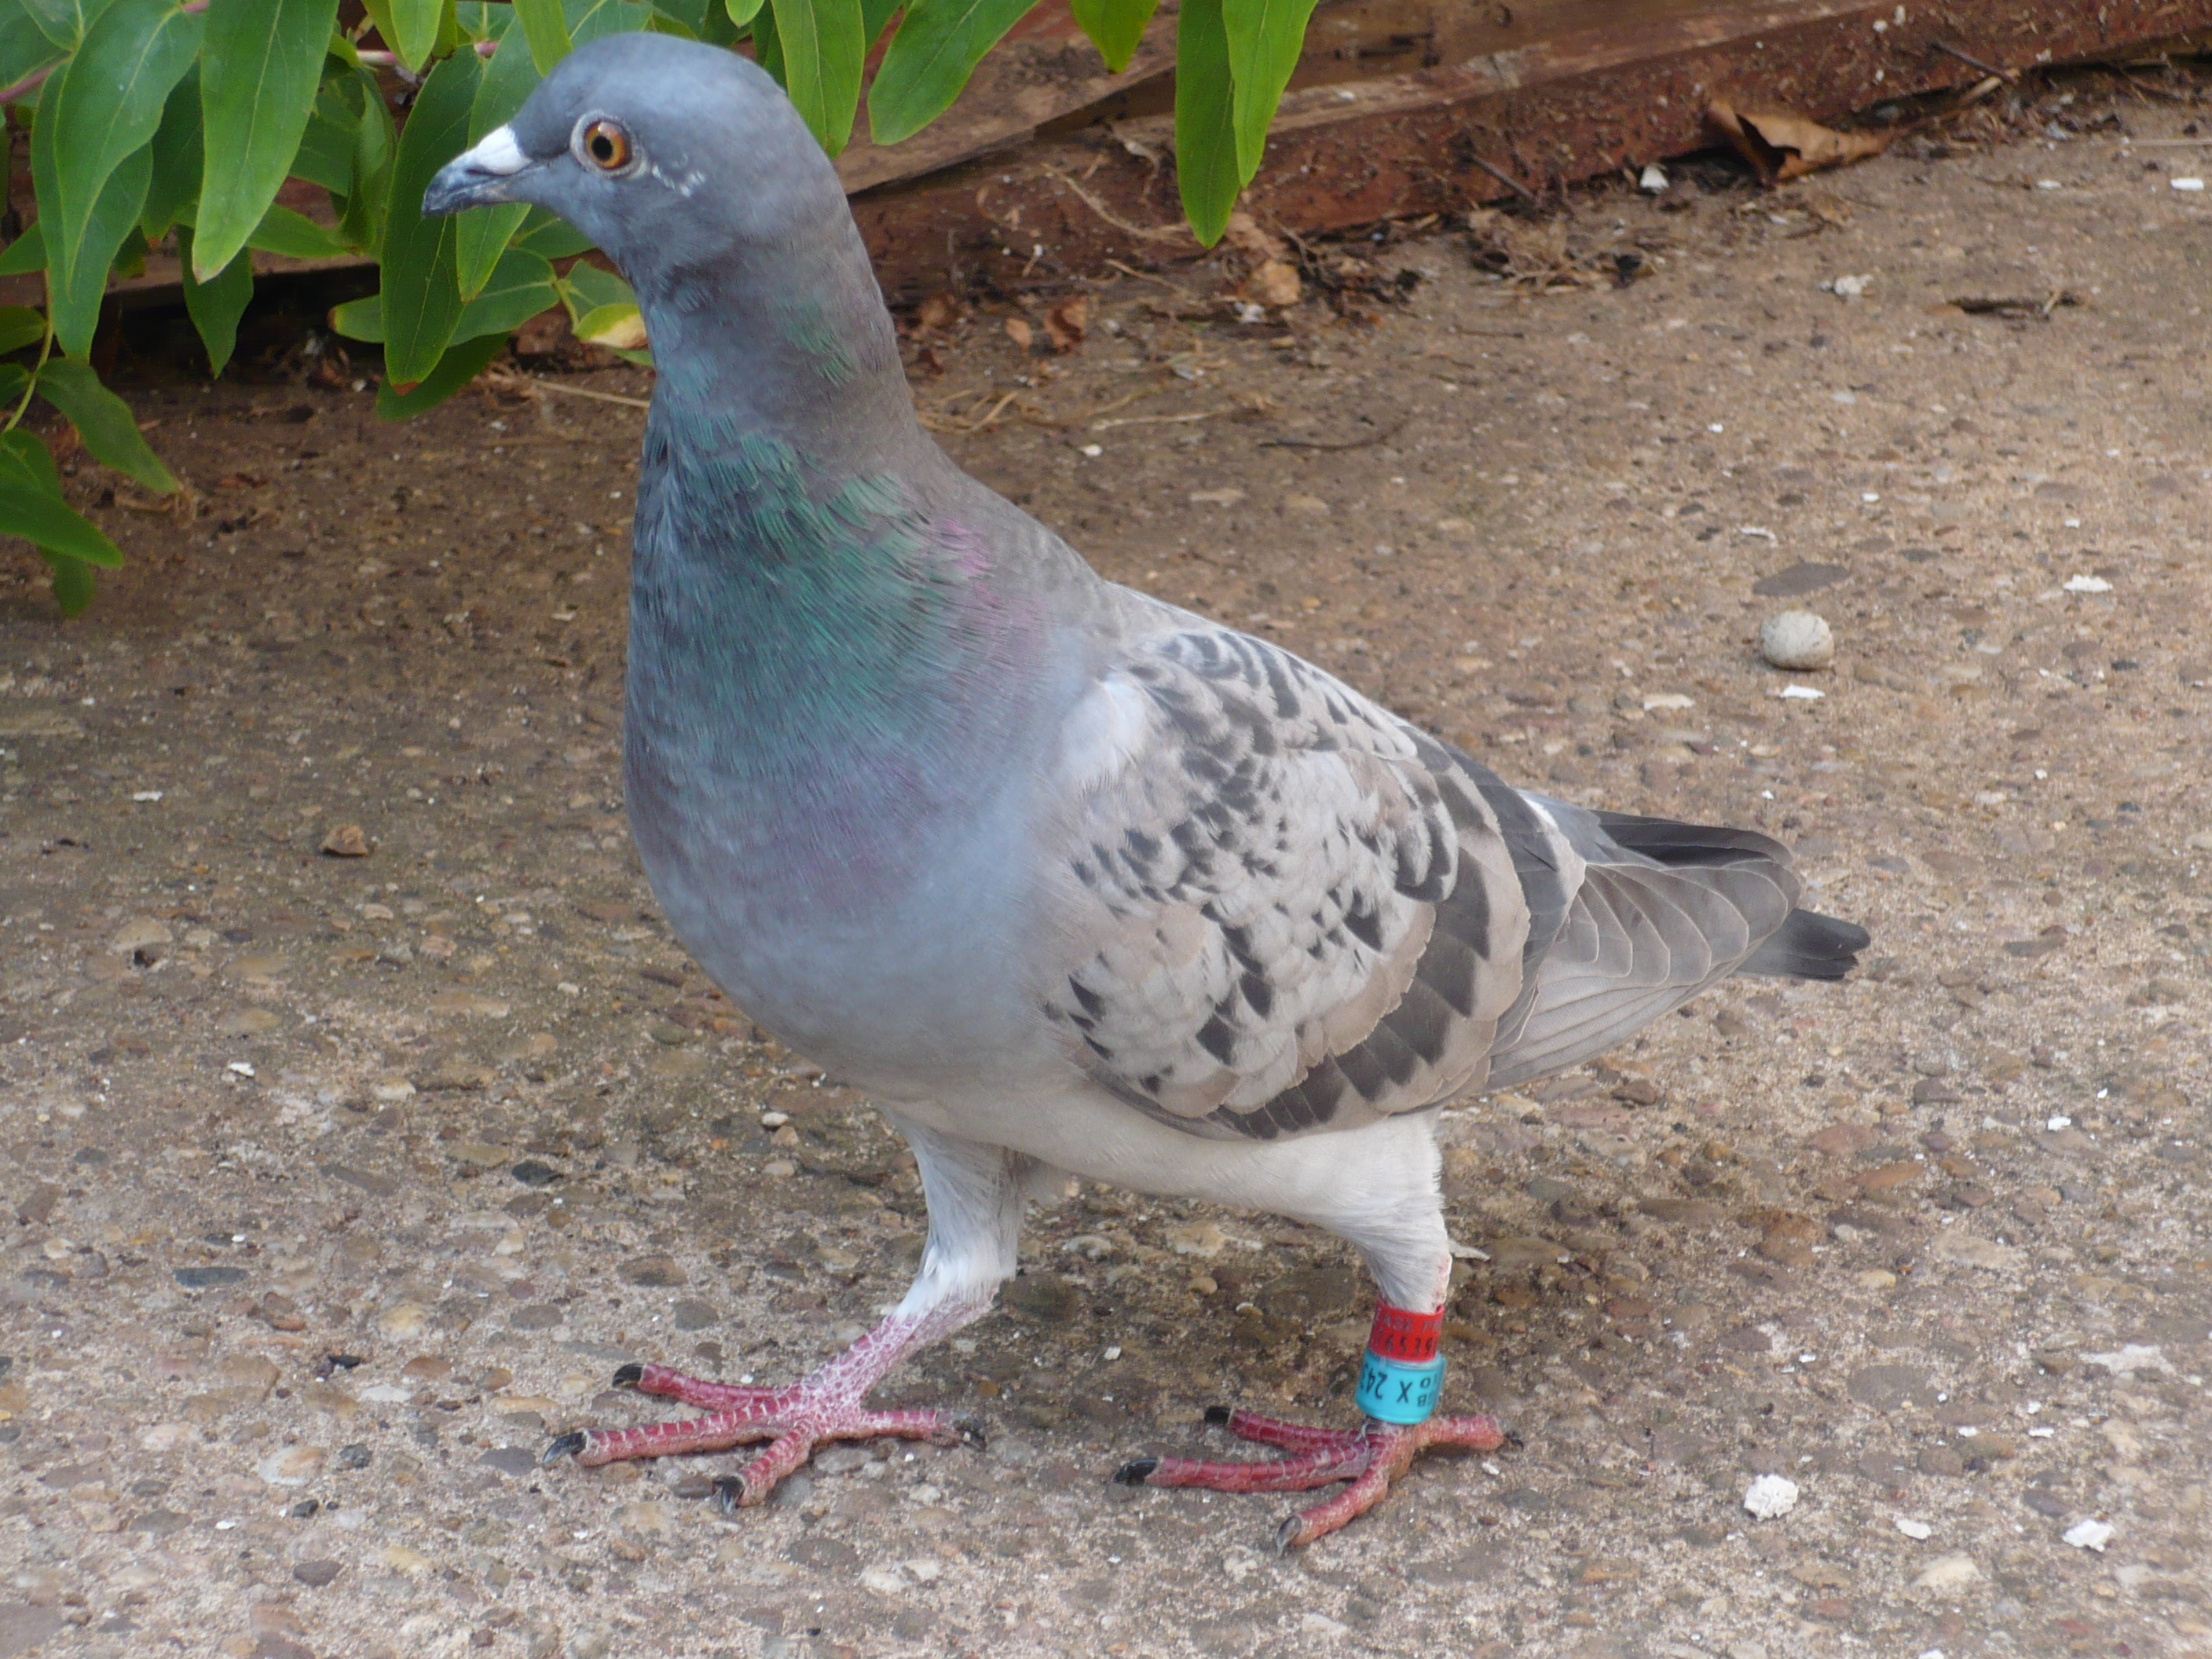 A messenger pigeon